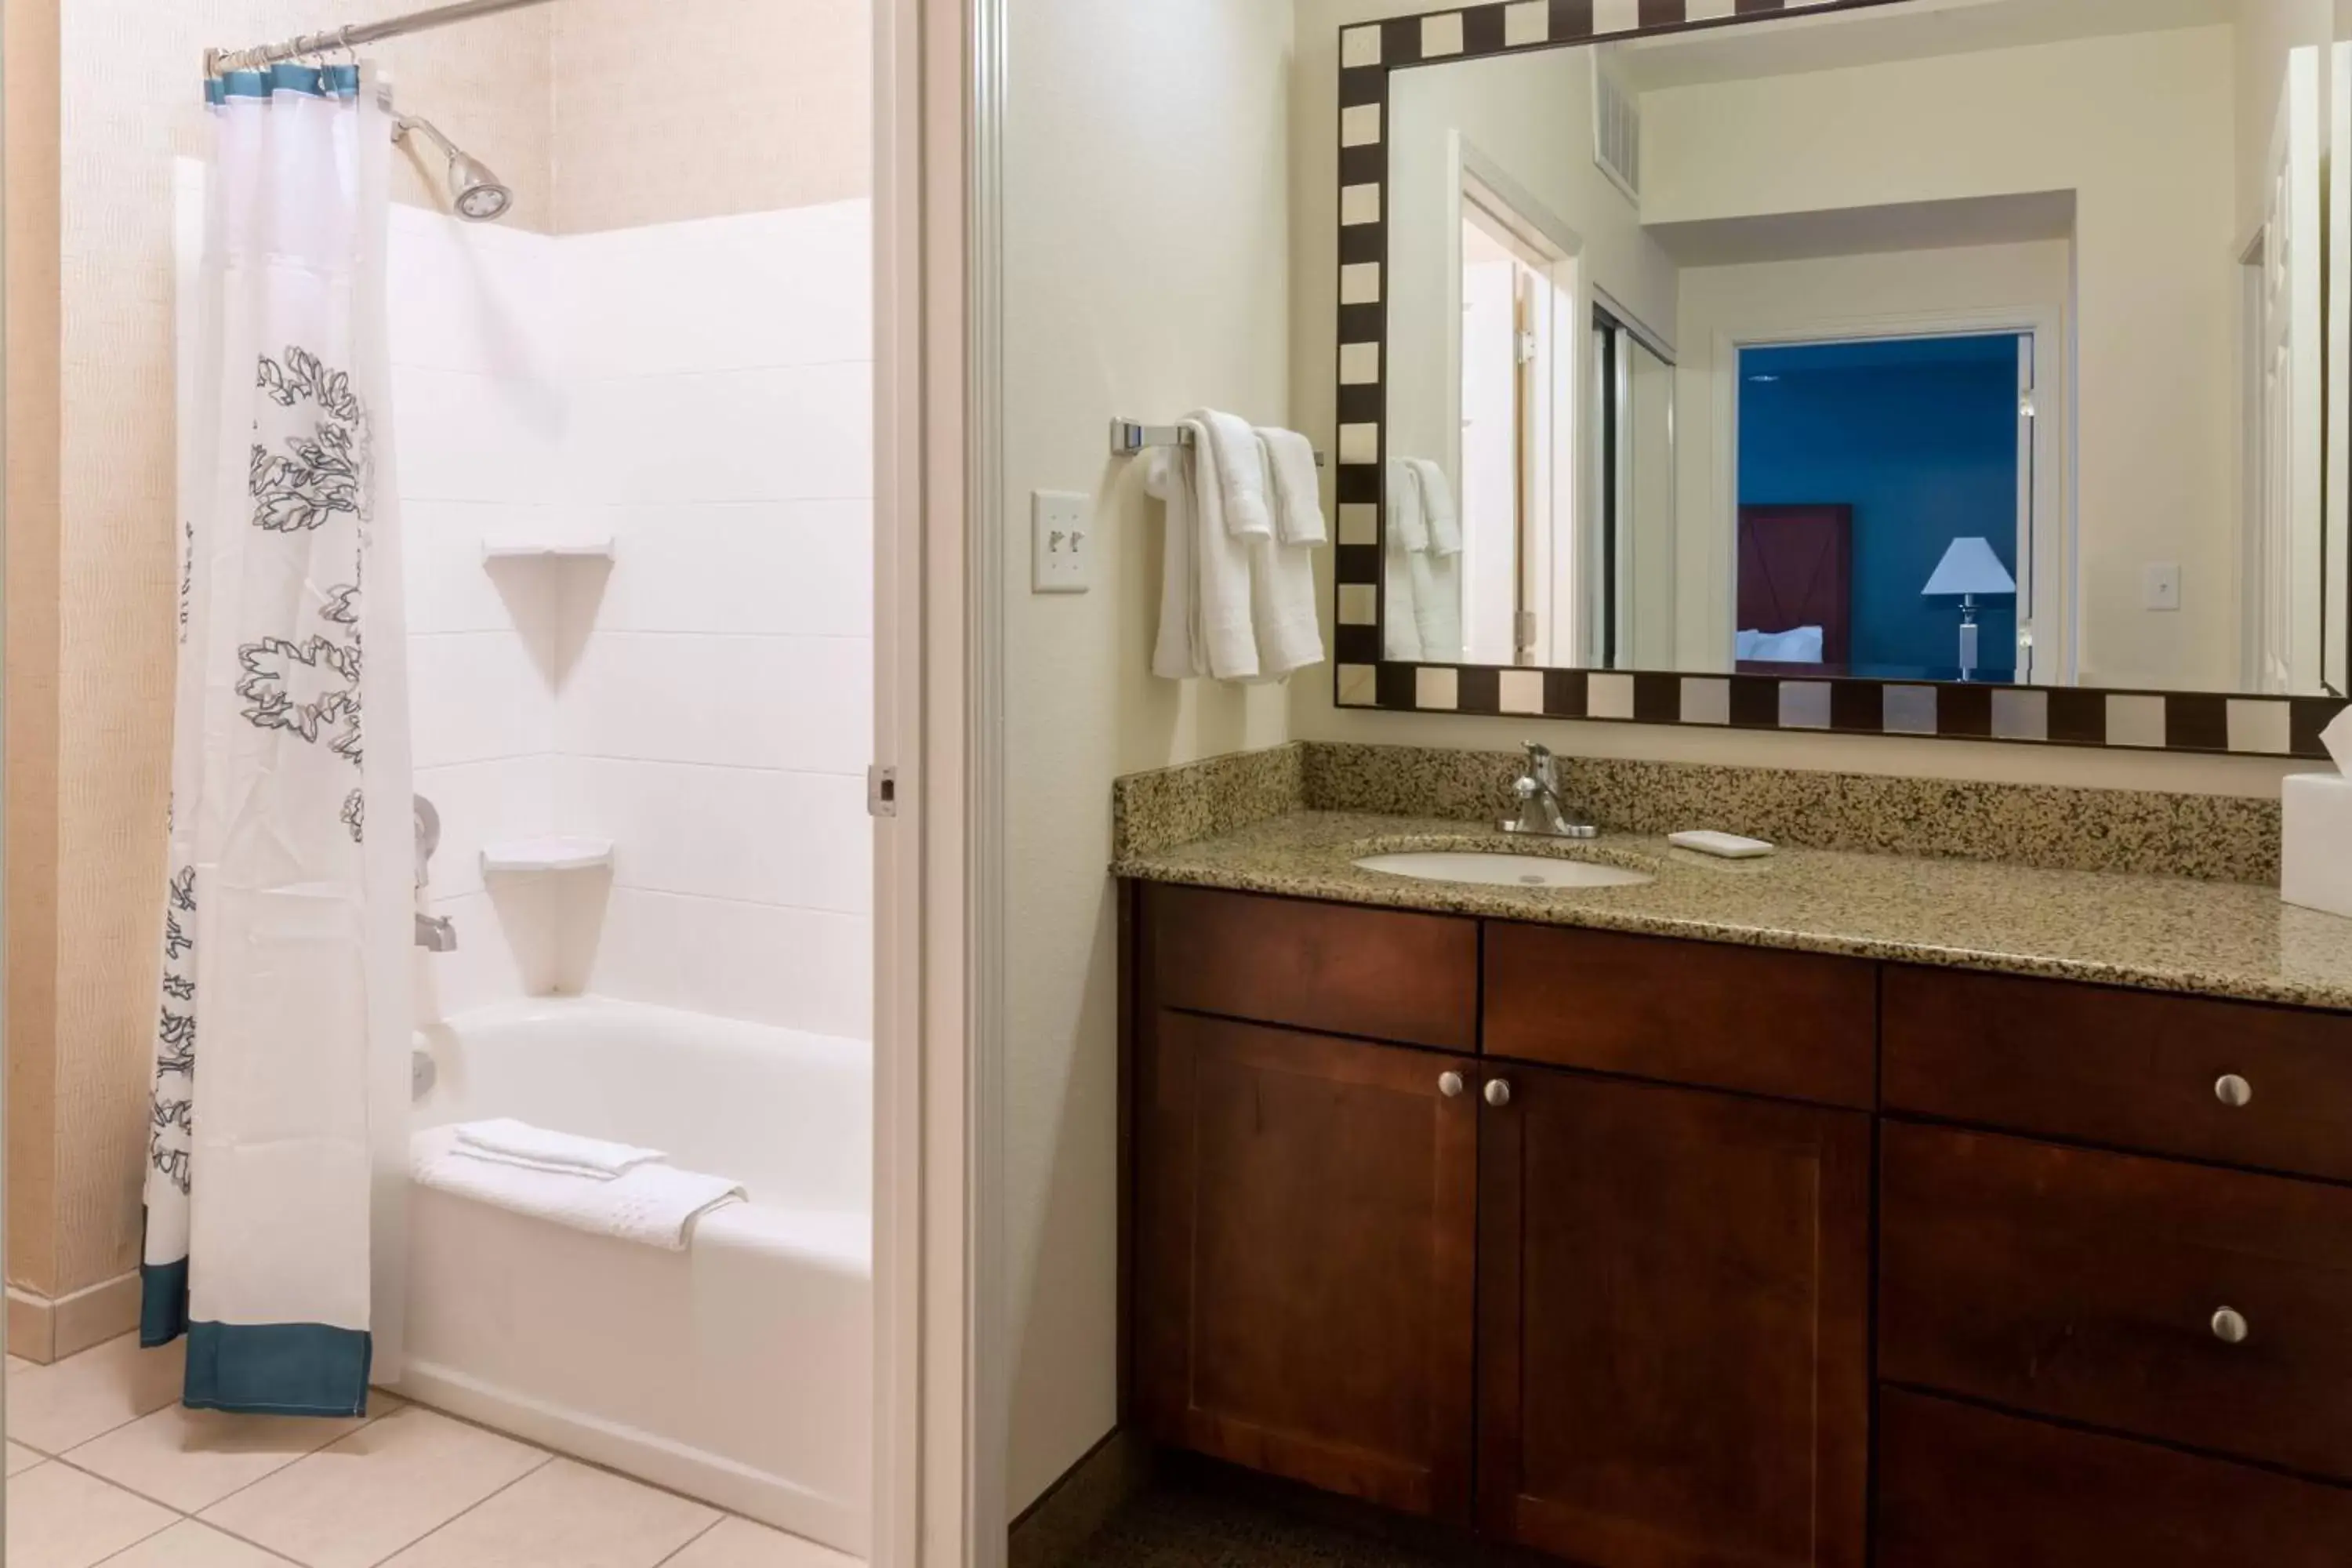 Bathroom in Residence Inn by Marriott Baton Rouge near LSU